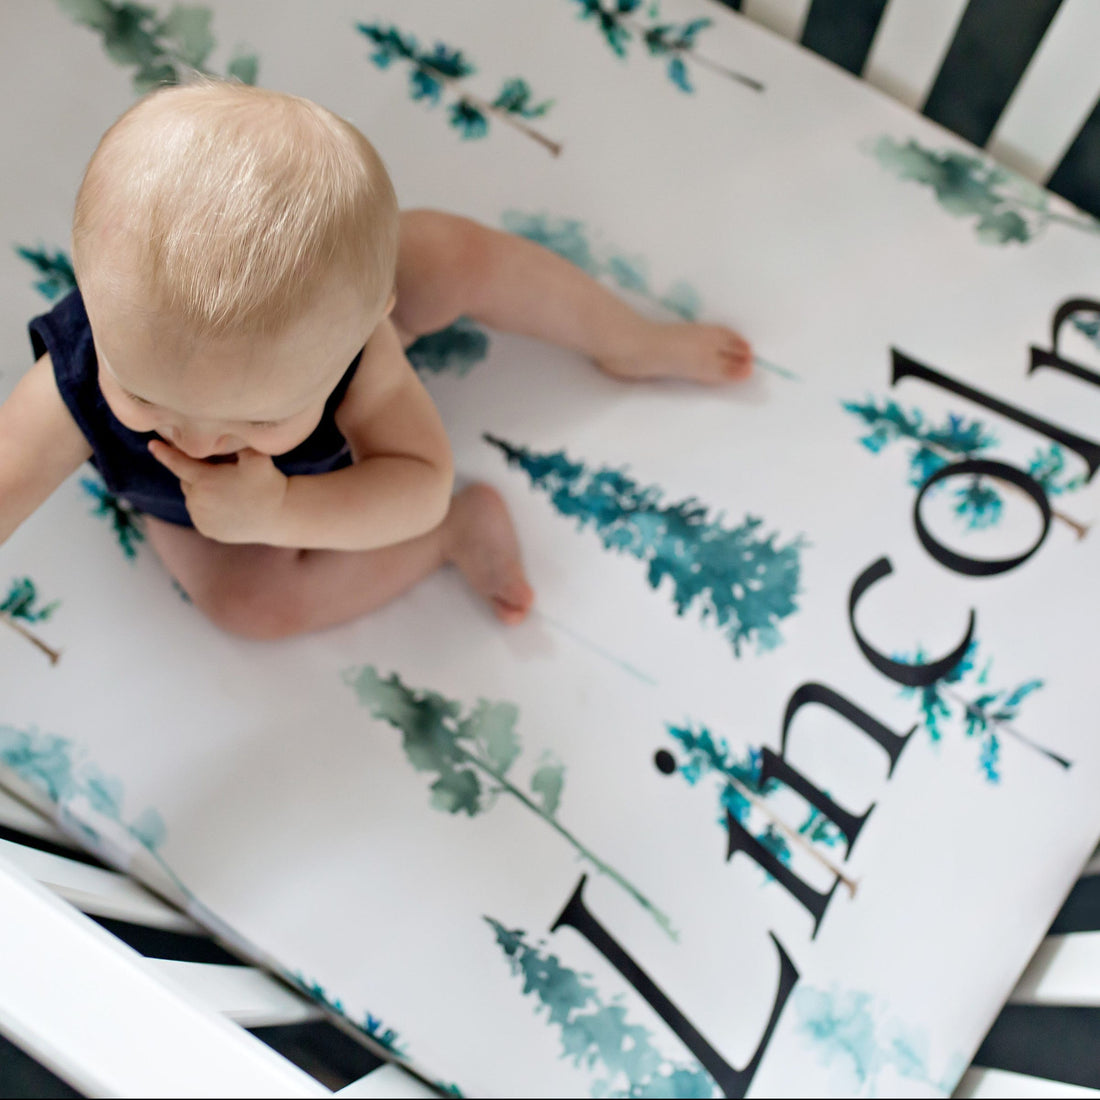 Personalized baby boy crib sheet adventure nursery baby boy gift dehnungsstreifenentfernen sheet